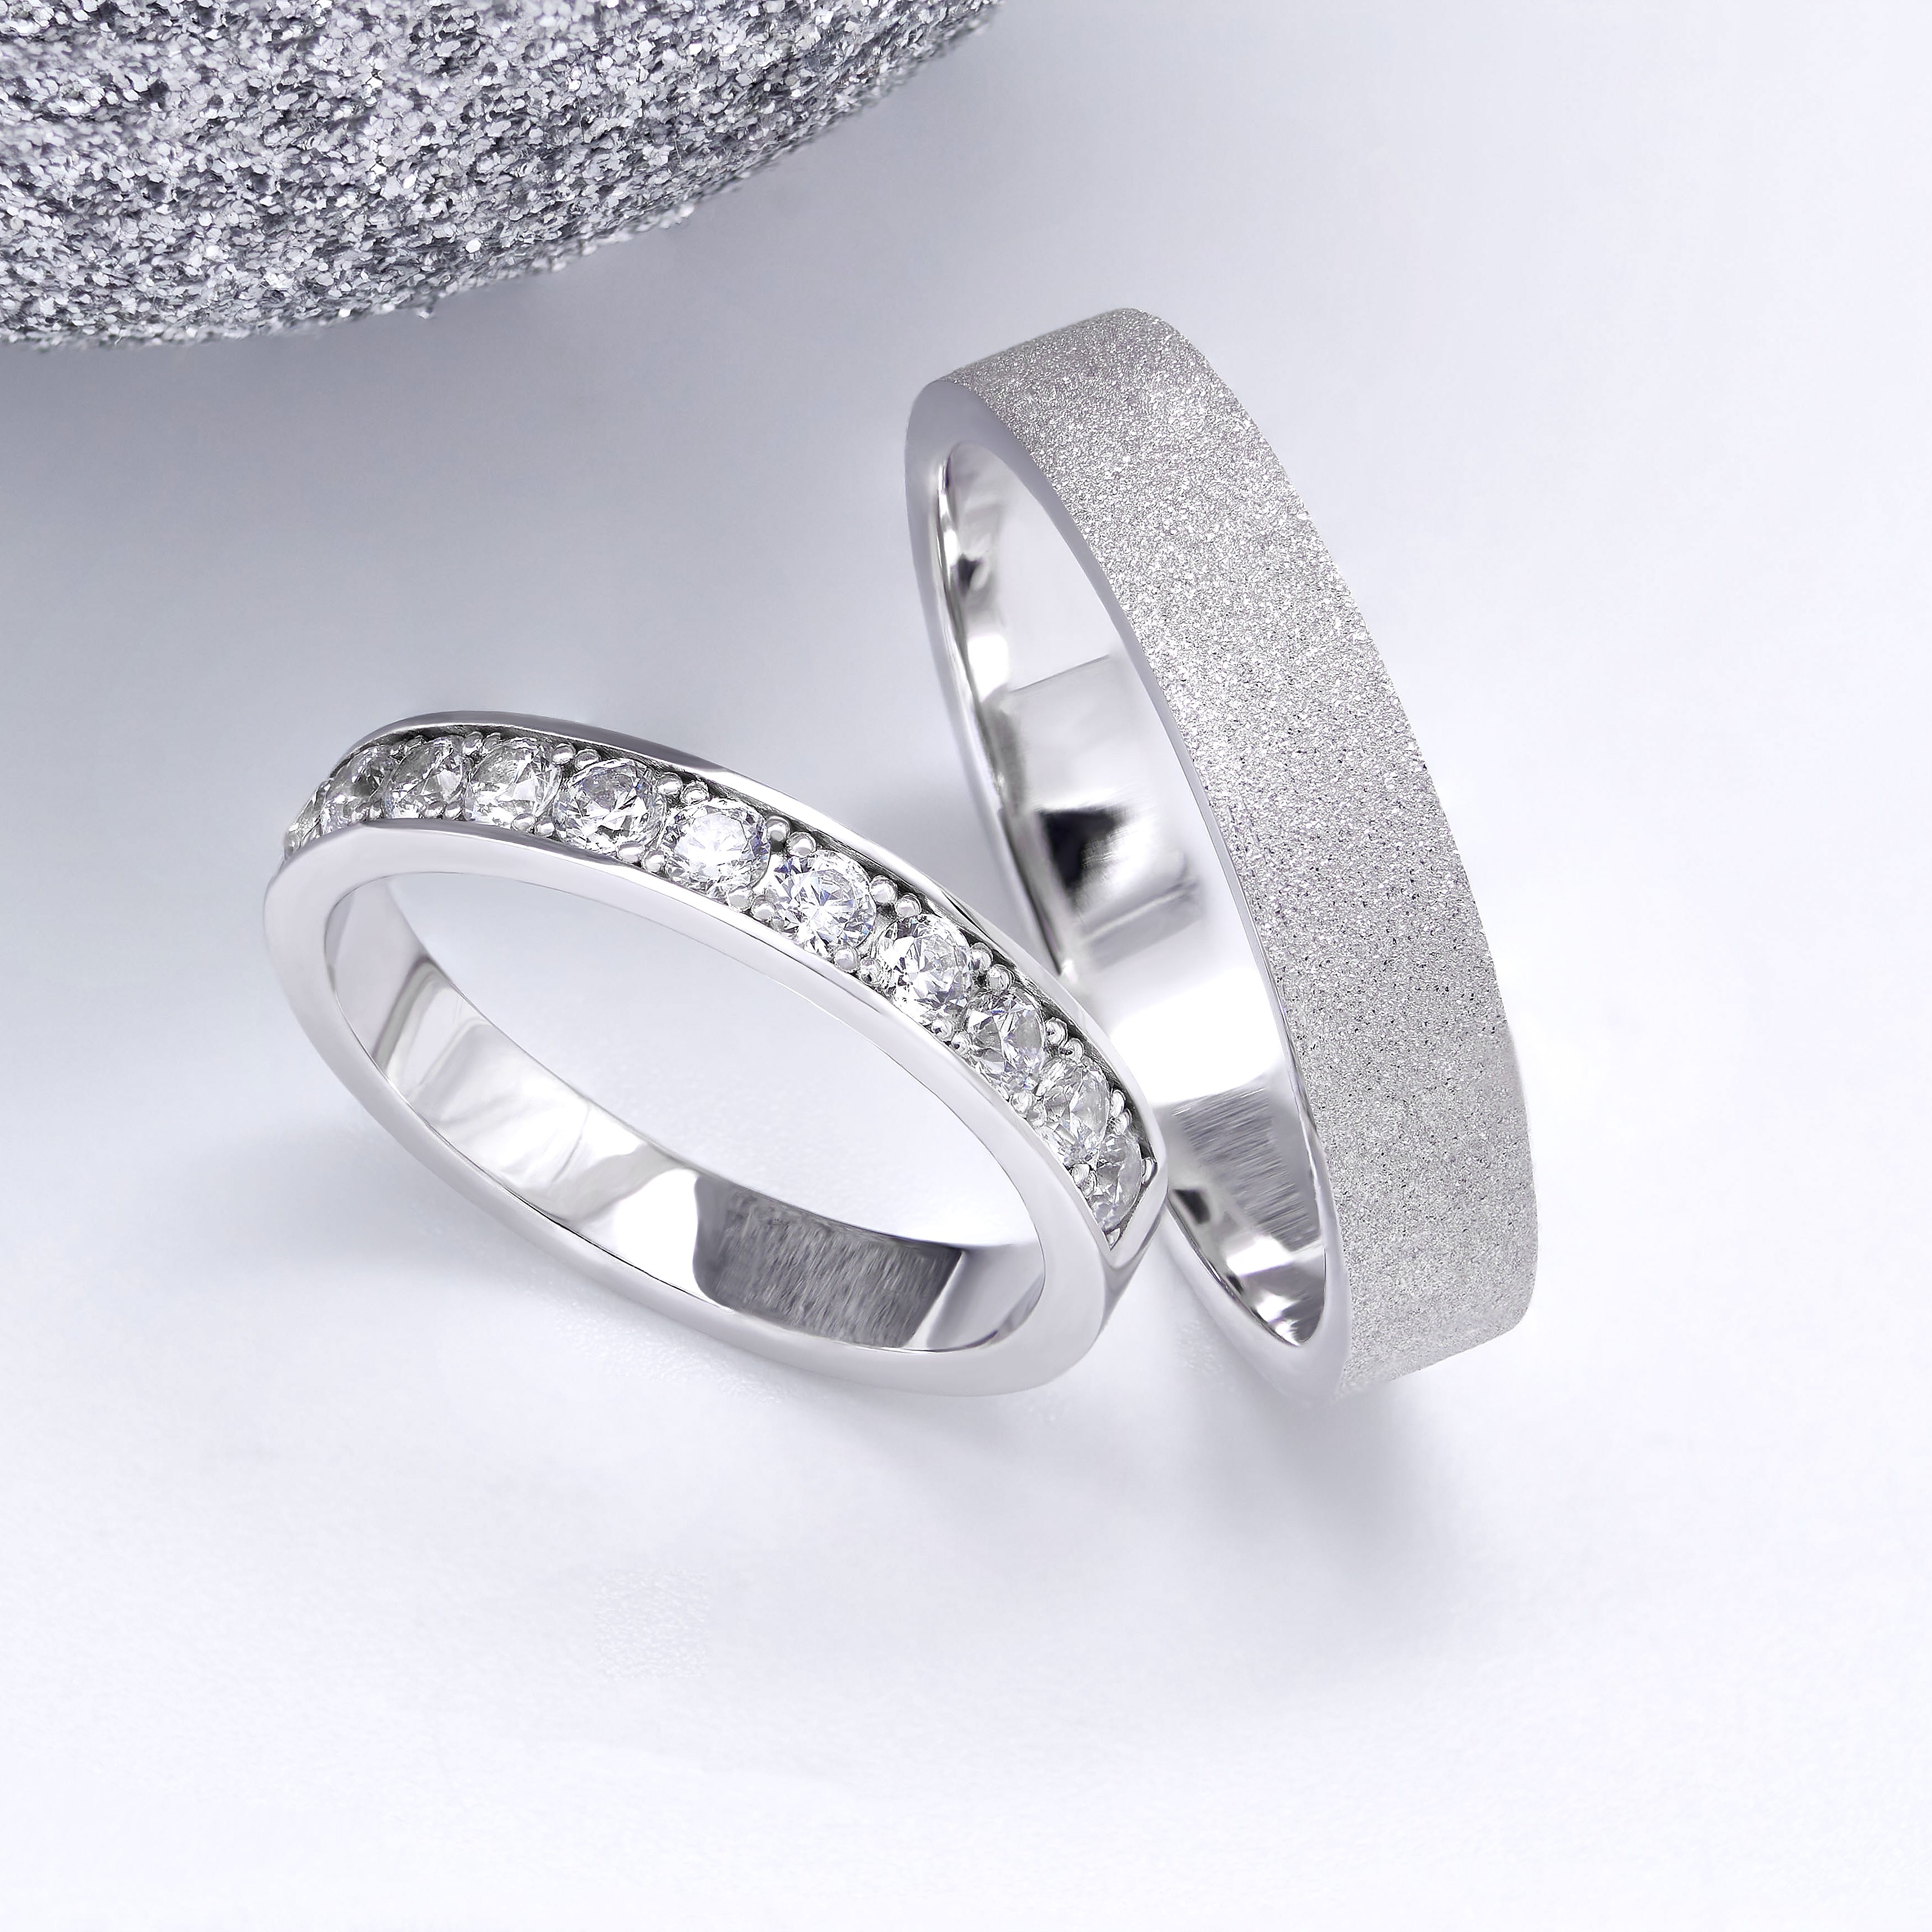 Кольцо невесты инкрустировано 11 бриллиантами 2,25 мм. Кольцо жениха 4,5 мм. Текстура алмазная мелкая.